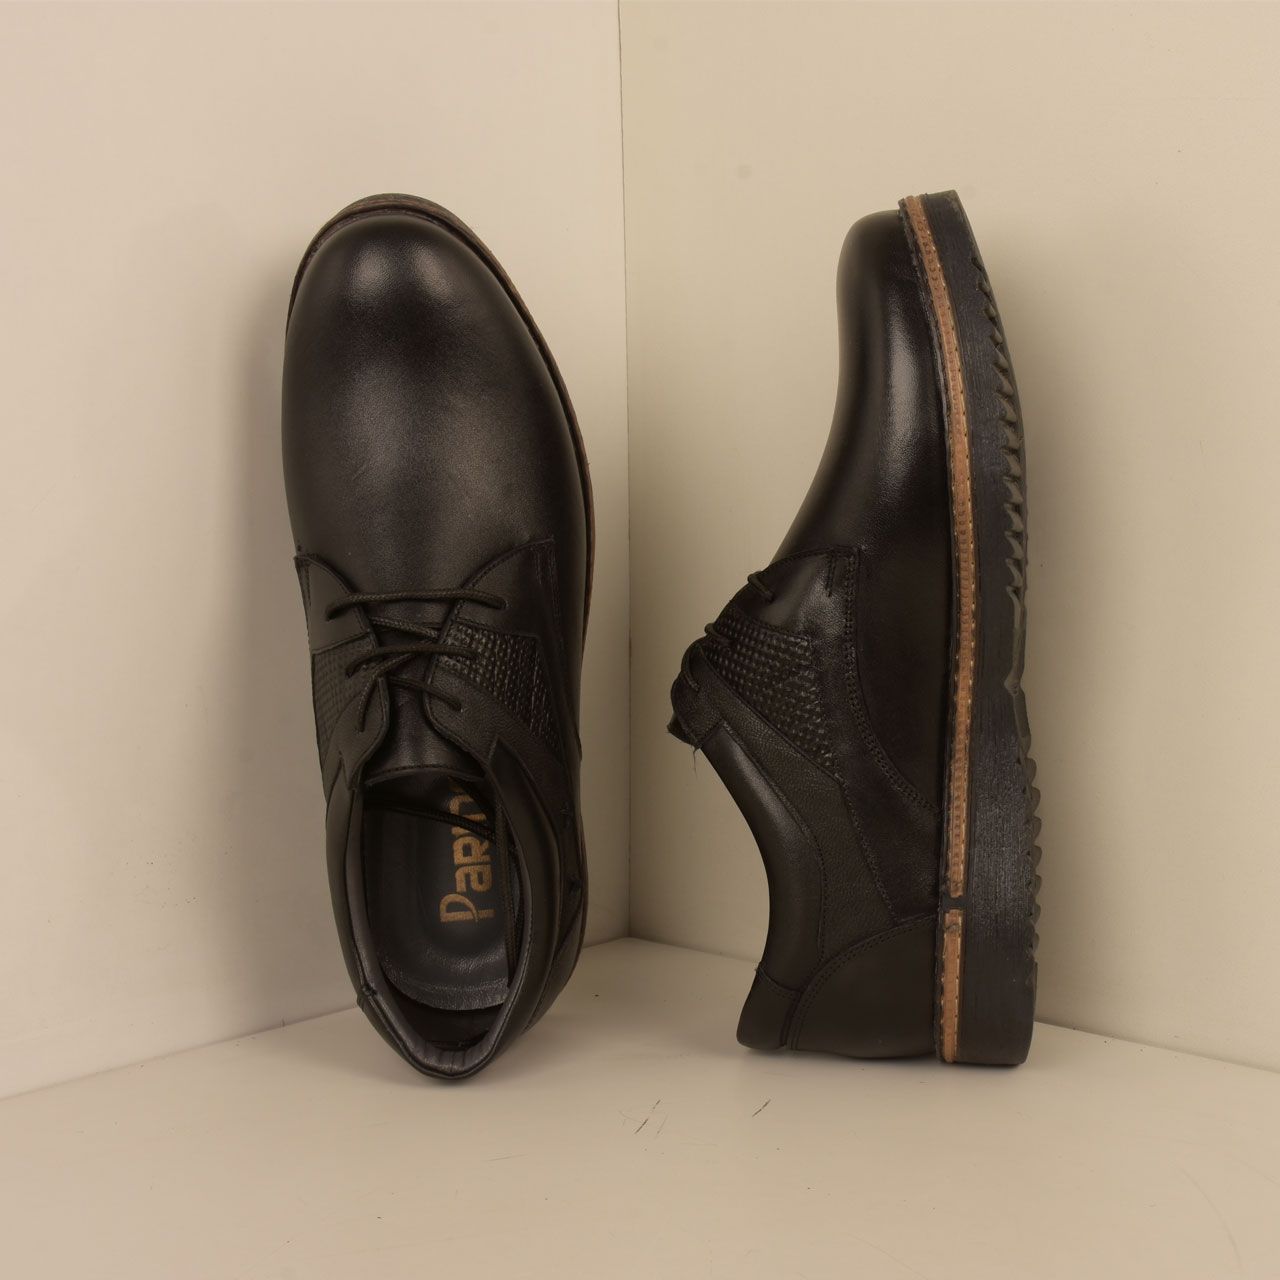  کفش روزمره مردانه پارینه چرم مدل SHO175 -  - 4